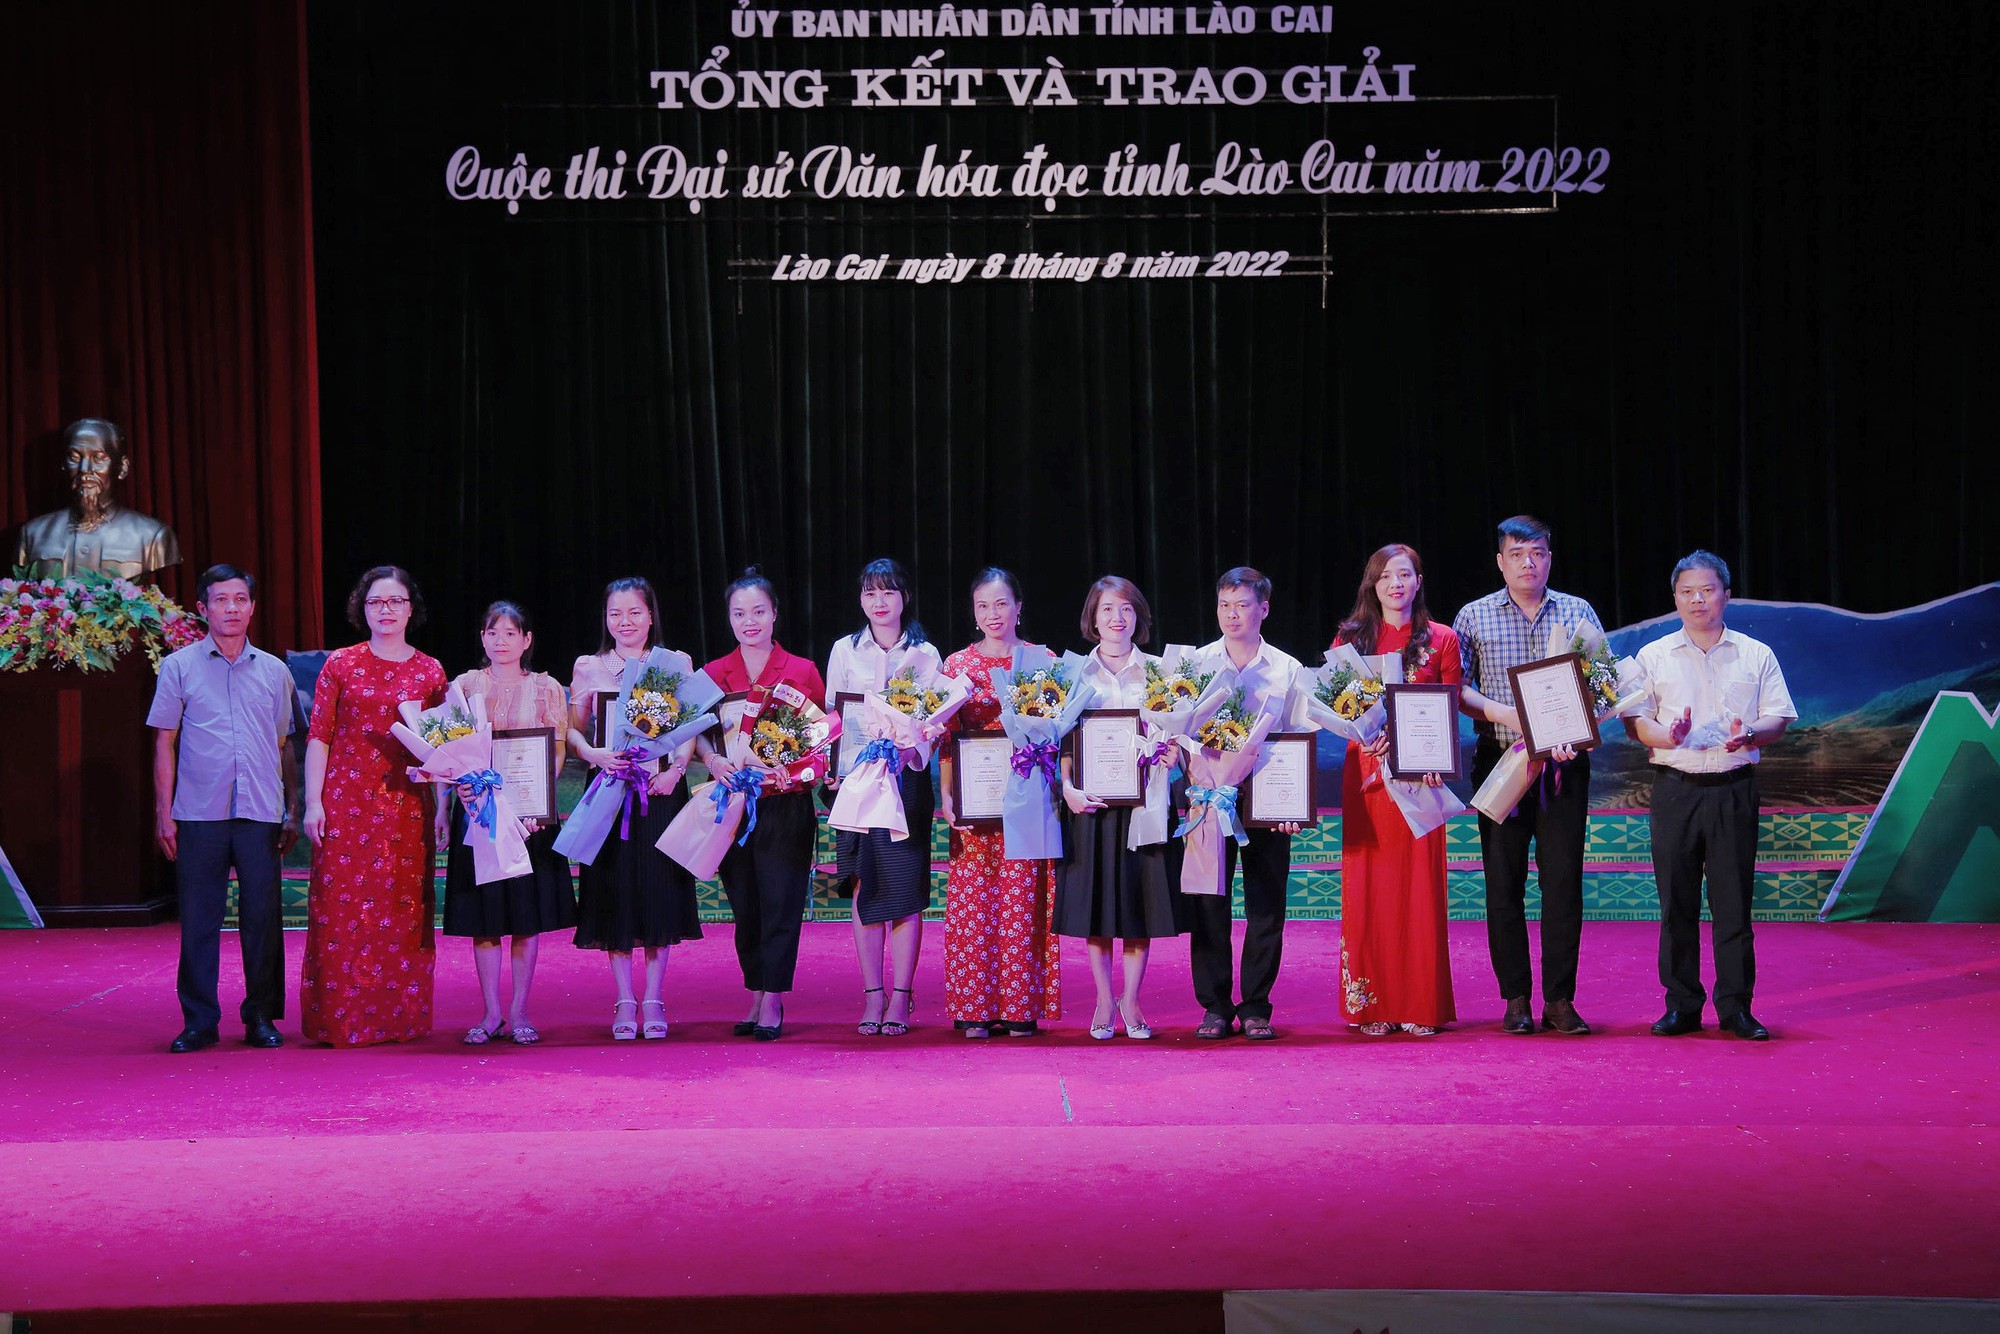 Tổng kết và trao giải Cuộc thi Đại sứ Văn hóa đọc tỉnh Lào Cai năm 2022 - Ảnh 6.